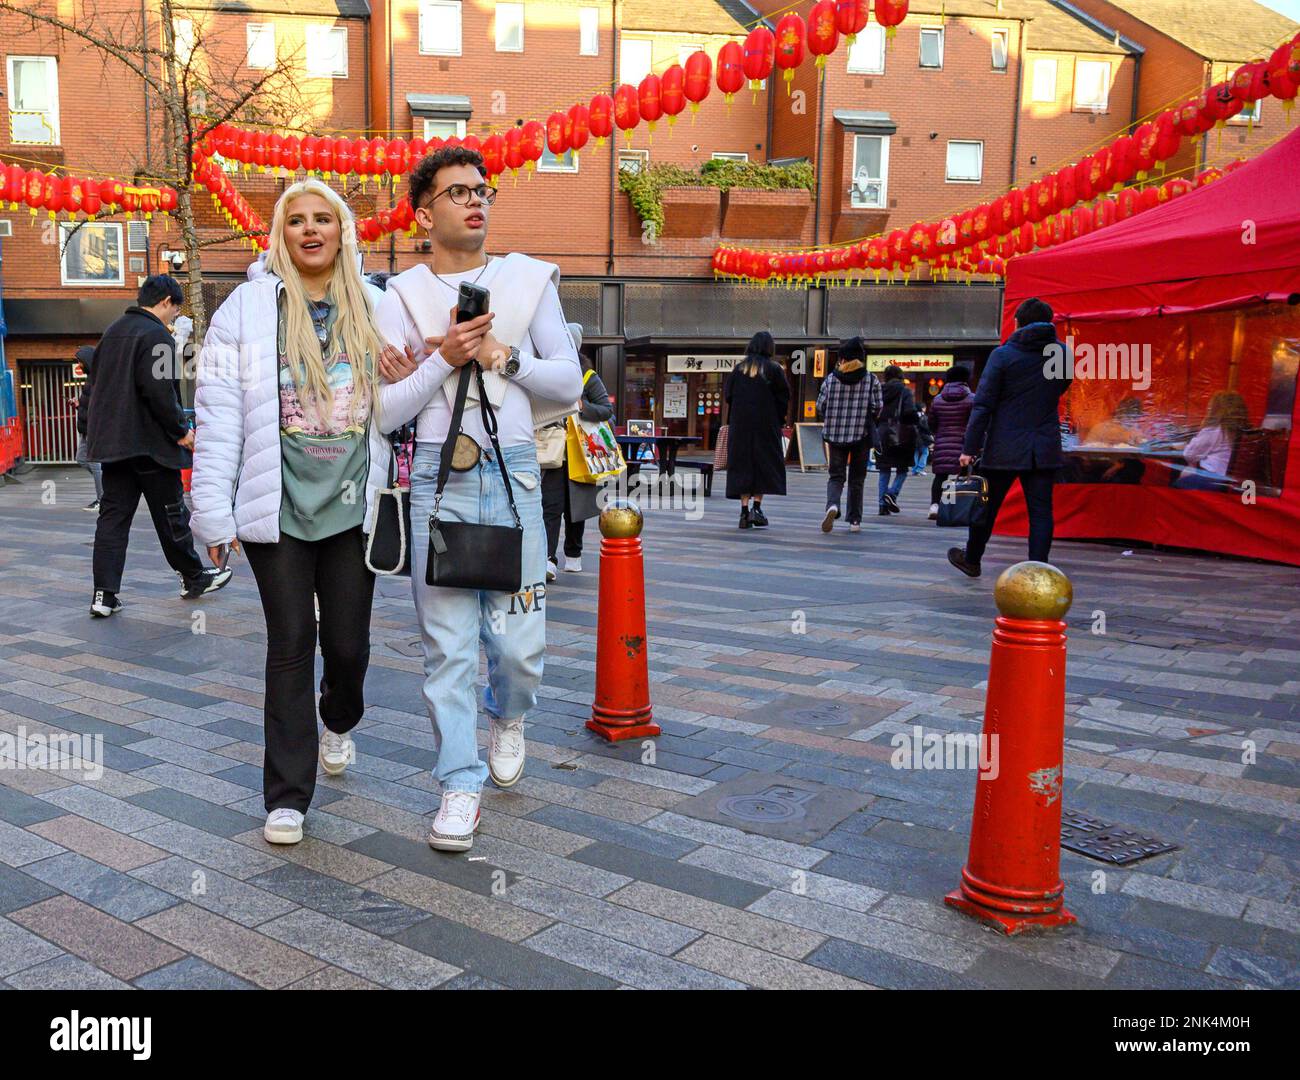 Londres, Angleterre, Royaume-Uni. Couple vêtu de blanc marchant dans Chinatown. Banque D'Images